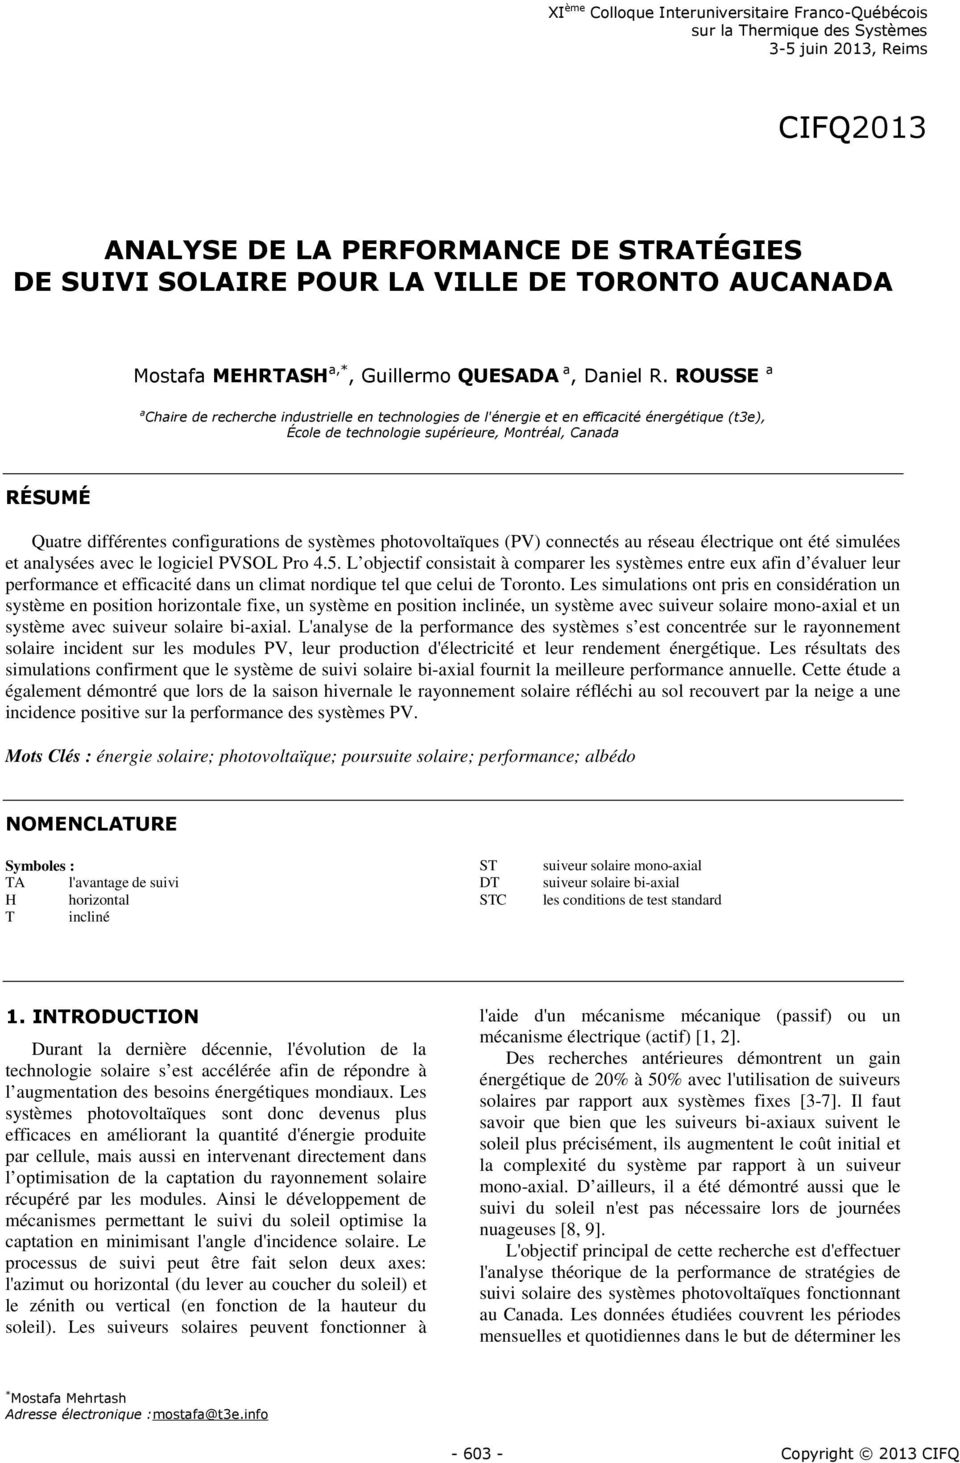 ROUSSE a a Chaire de recherche industrielle en technologies de l'énergie et en efficacité énergétique (t3e), École de technologie supérieure, Montréal, Canada RÉSUMÉ Quatre différentes configurations